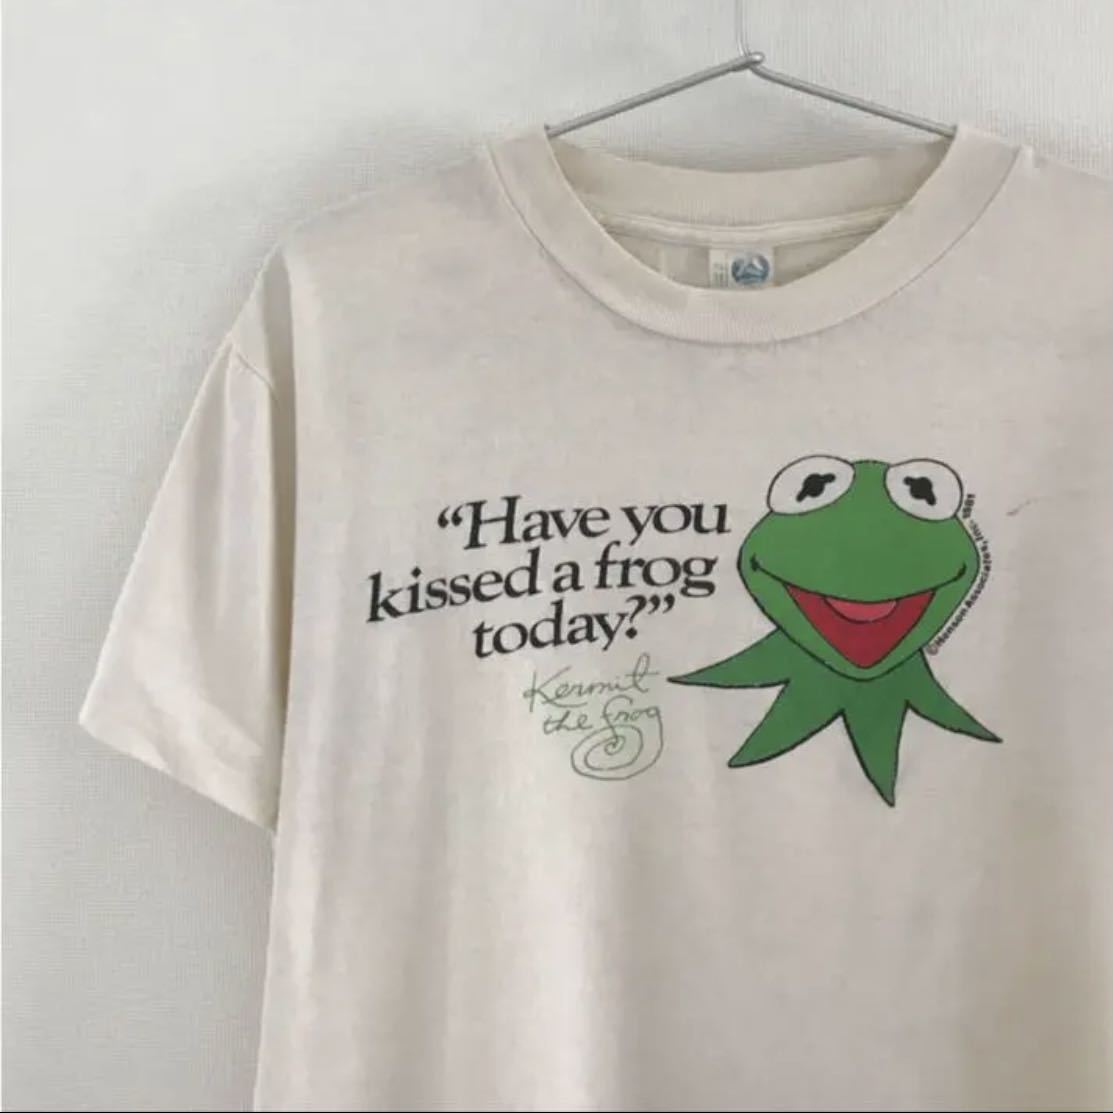 80 S ビンテージ カーミット Tシャツ M セサミストリート Kermit イラスト キャラクター 売買されたオークション情報 Yahooの商品情報をアーカイブ公開 オークファン Aucfan Com